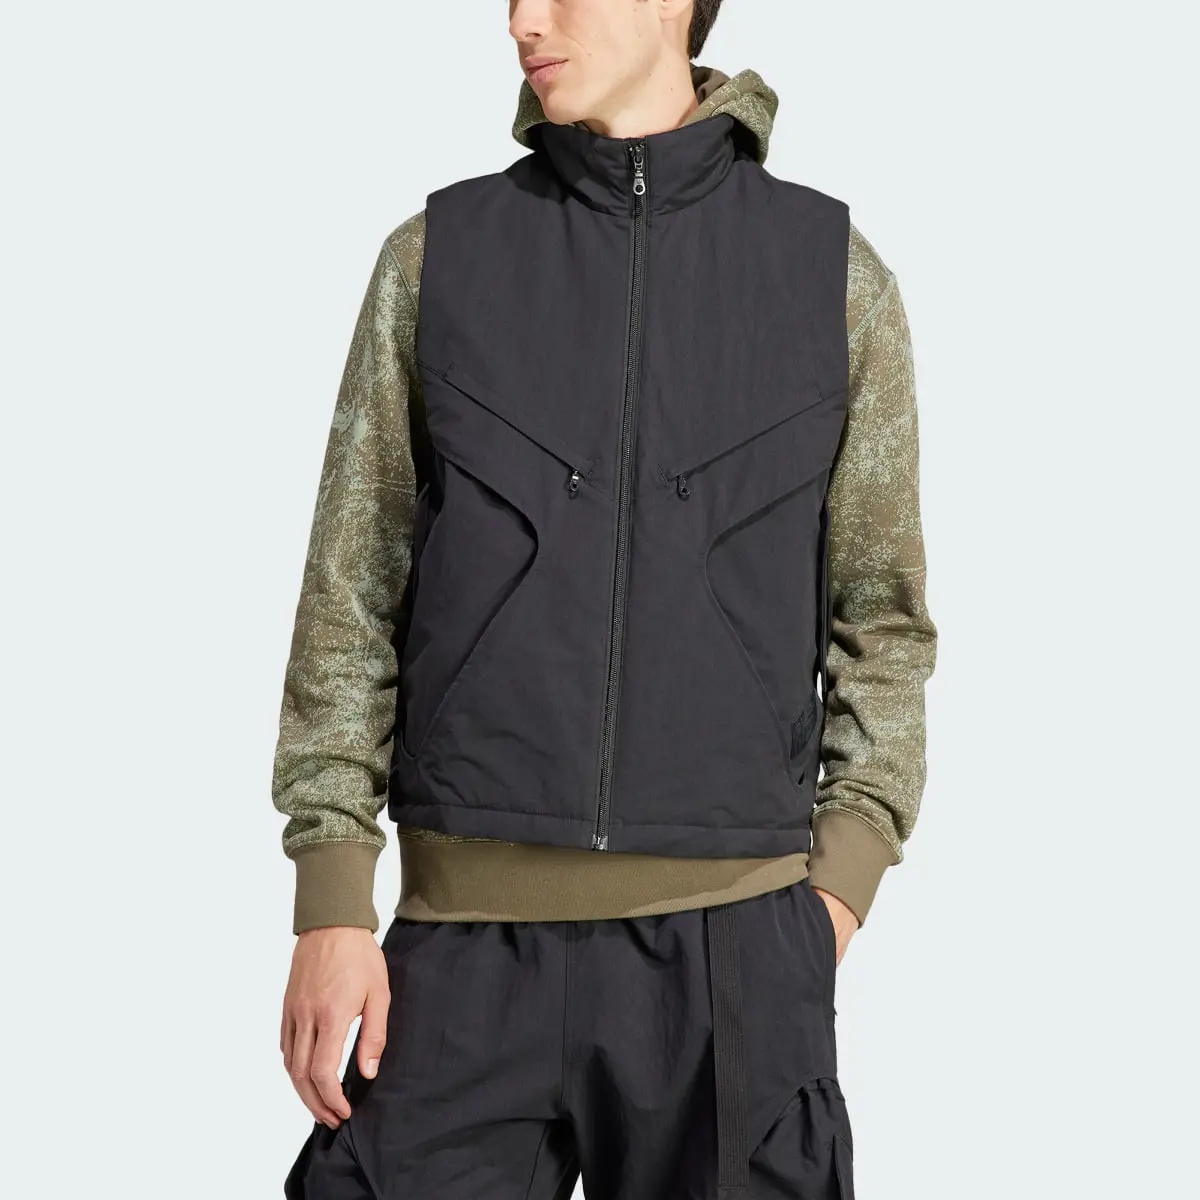 Adidas Adventure Premium Multi-Pocket Vest. 1